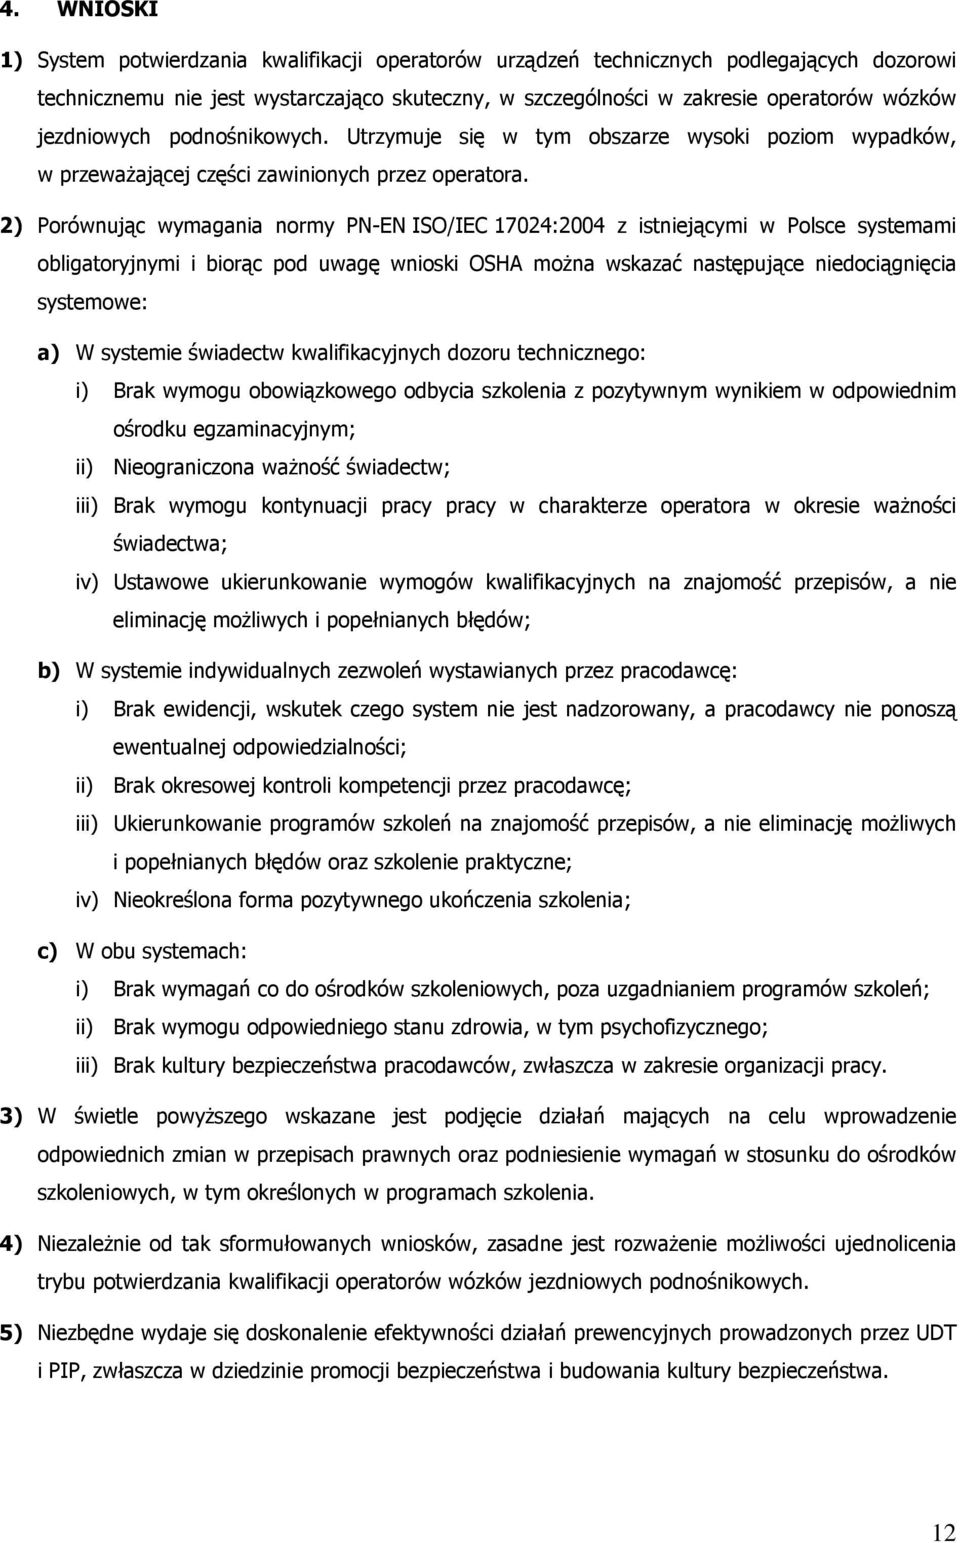 2) Porównując wymagania normy PN-EN ISO/IEC 17024:2004 z istniejącymi w Polsce systemami obligatoryjnymi i biorąc pod uwagę wnioski OSHA można wskazać następujące niedociągnięcia systemowe: a) W